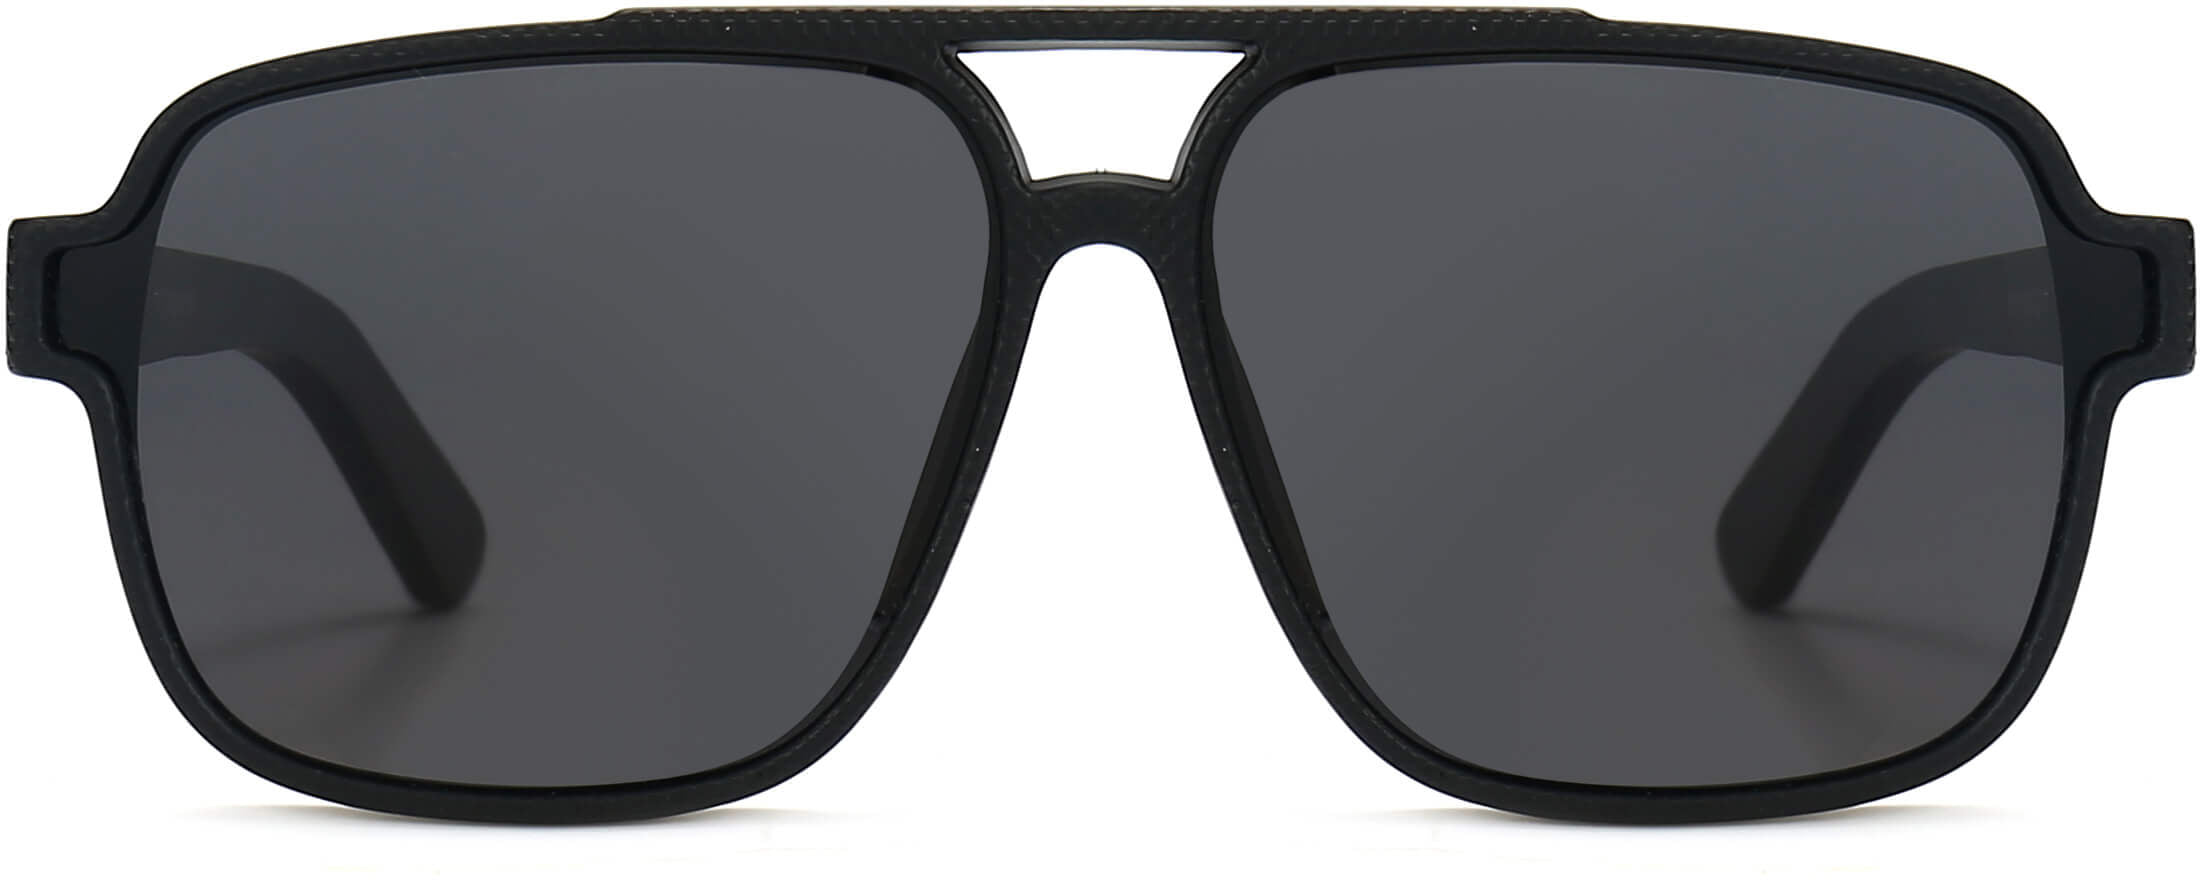 Colotte Black Plastic Sunglasses from ANRRI